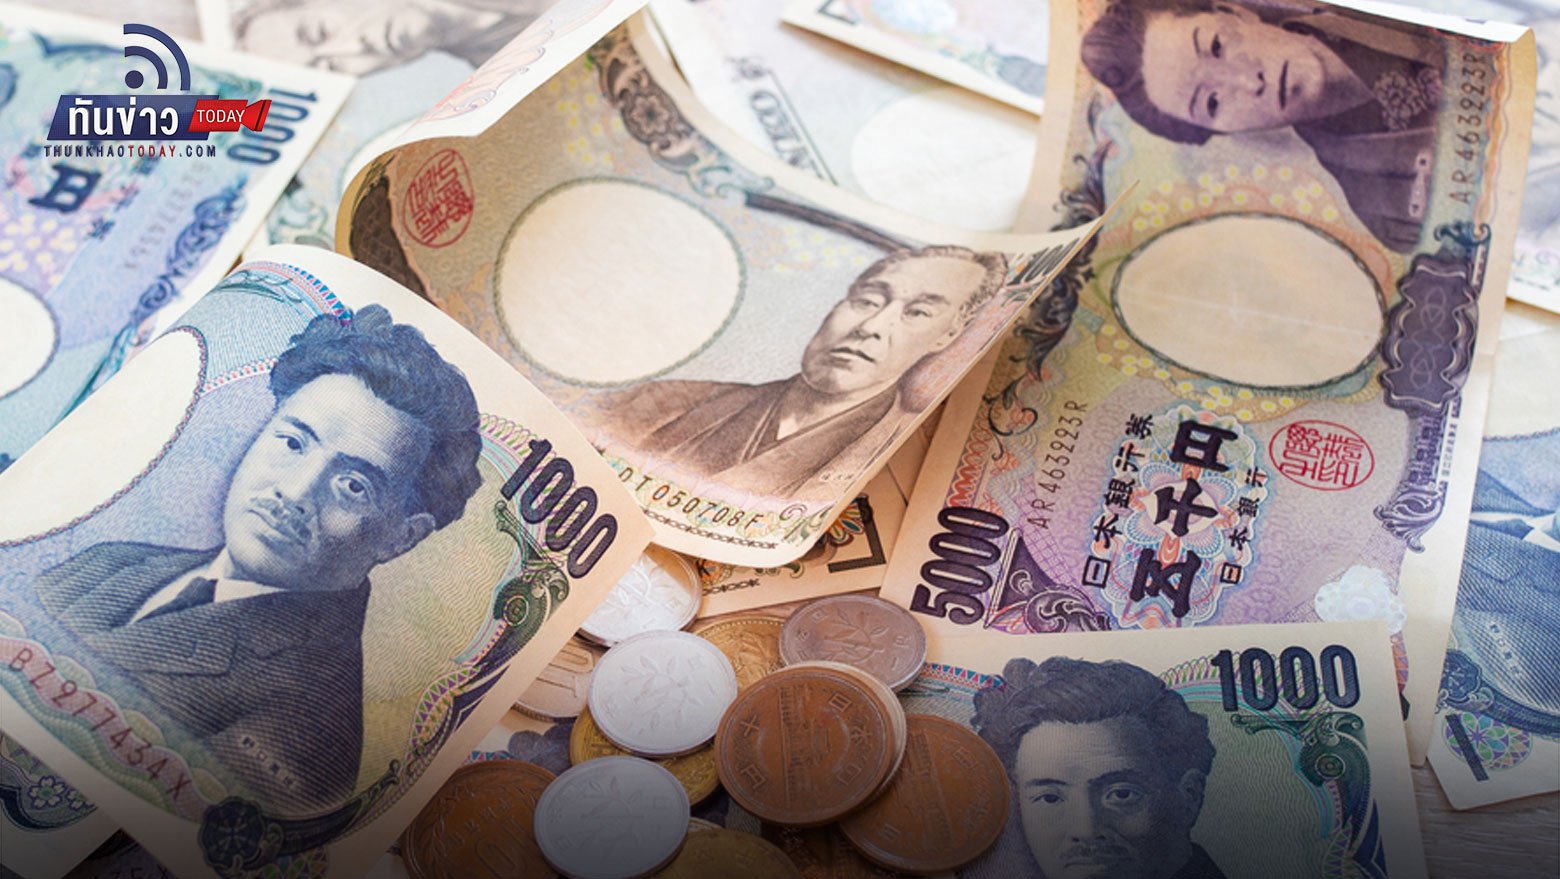 เงินบาทอ่อนในรอบ 5 ปี เงินเยนญี่ปุ่นอ่อนค่าในรอบ 20 ปี เพราะอะไร?